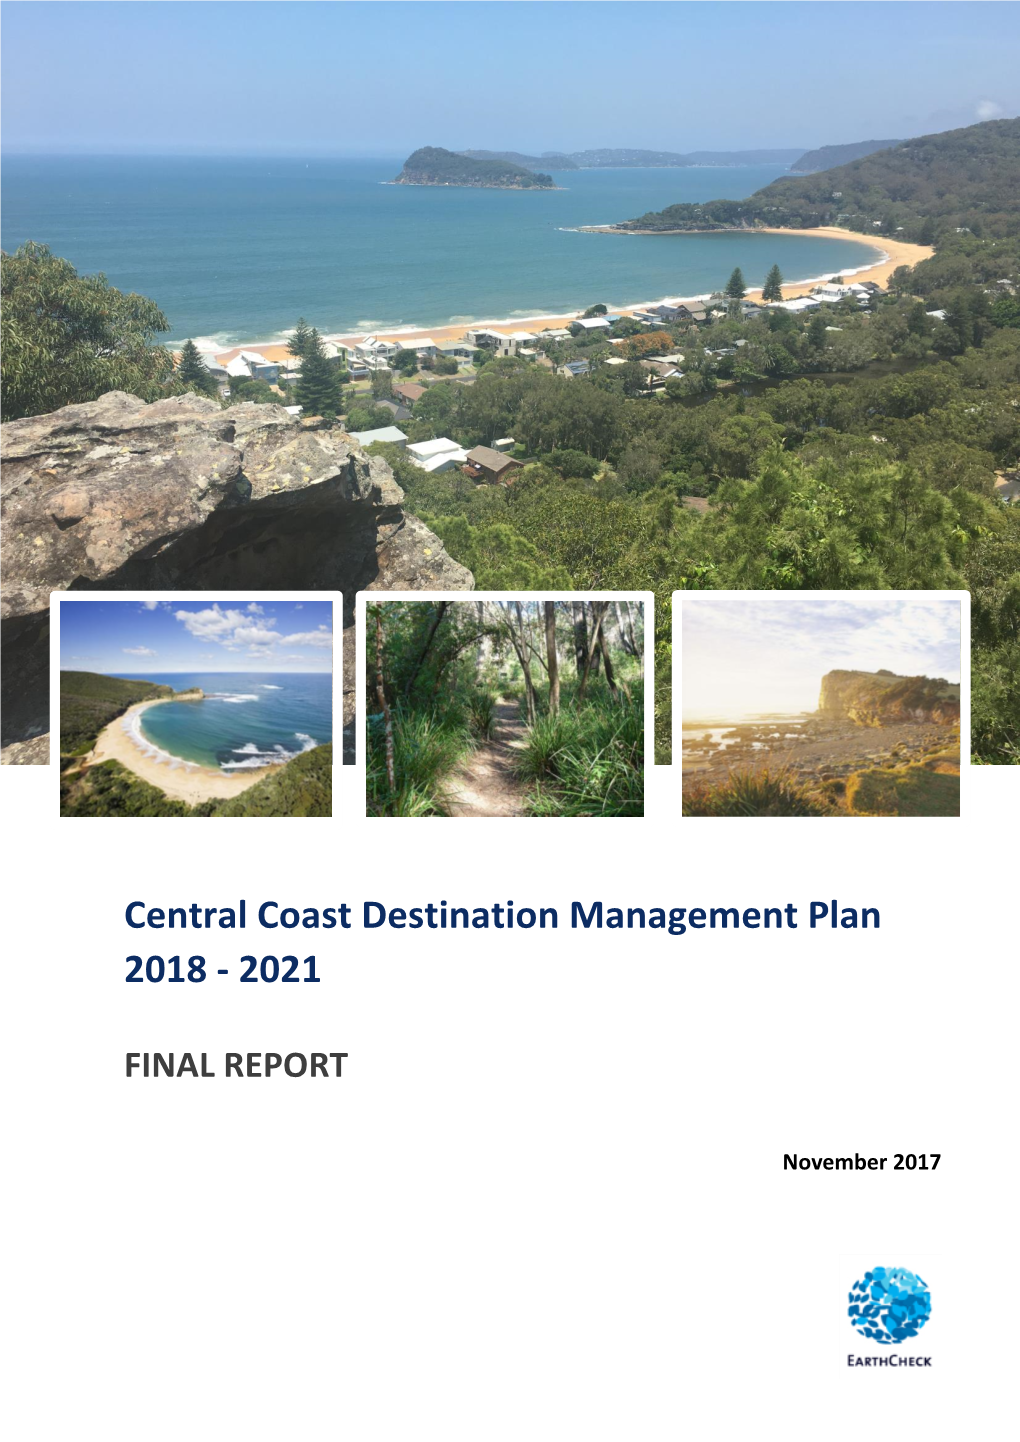 Central Coast Destination Management Plan 2018 - 2021